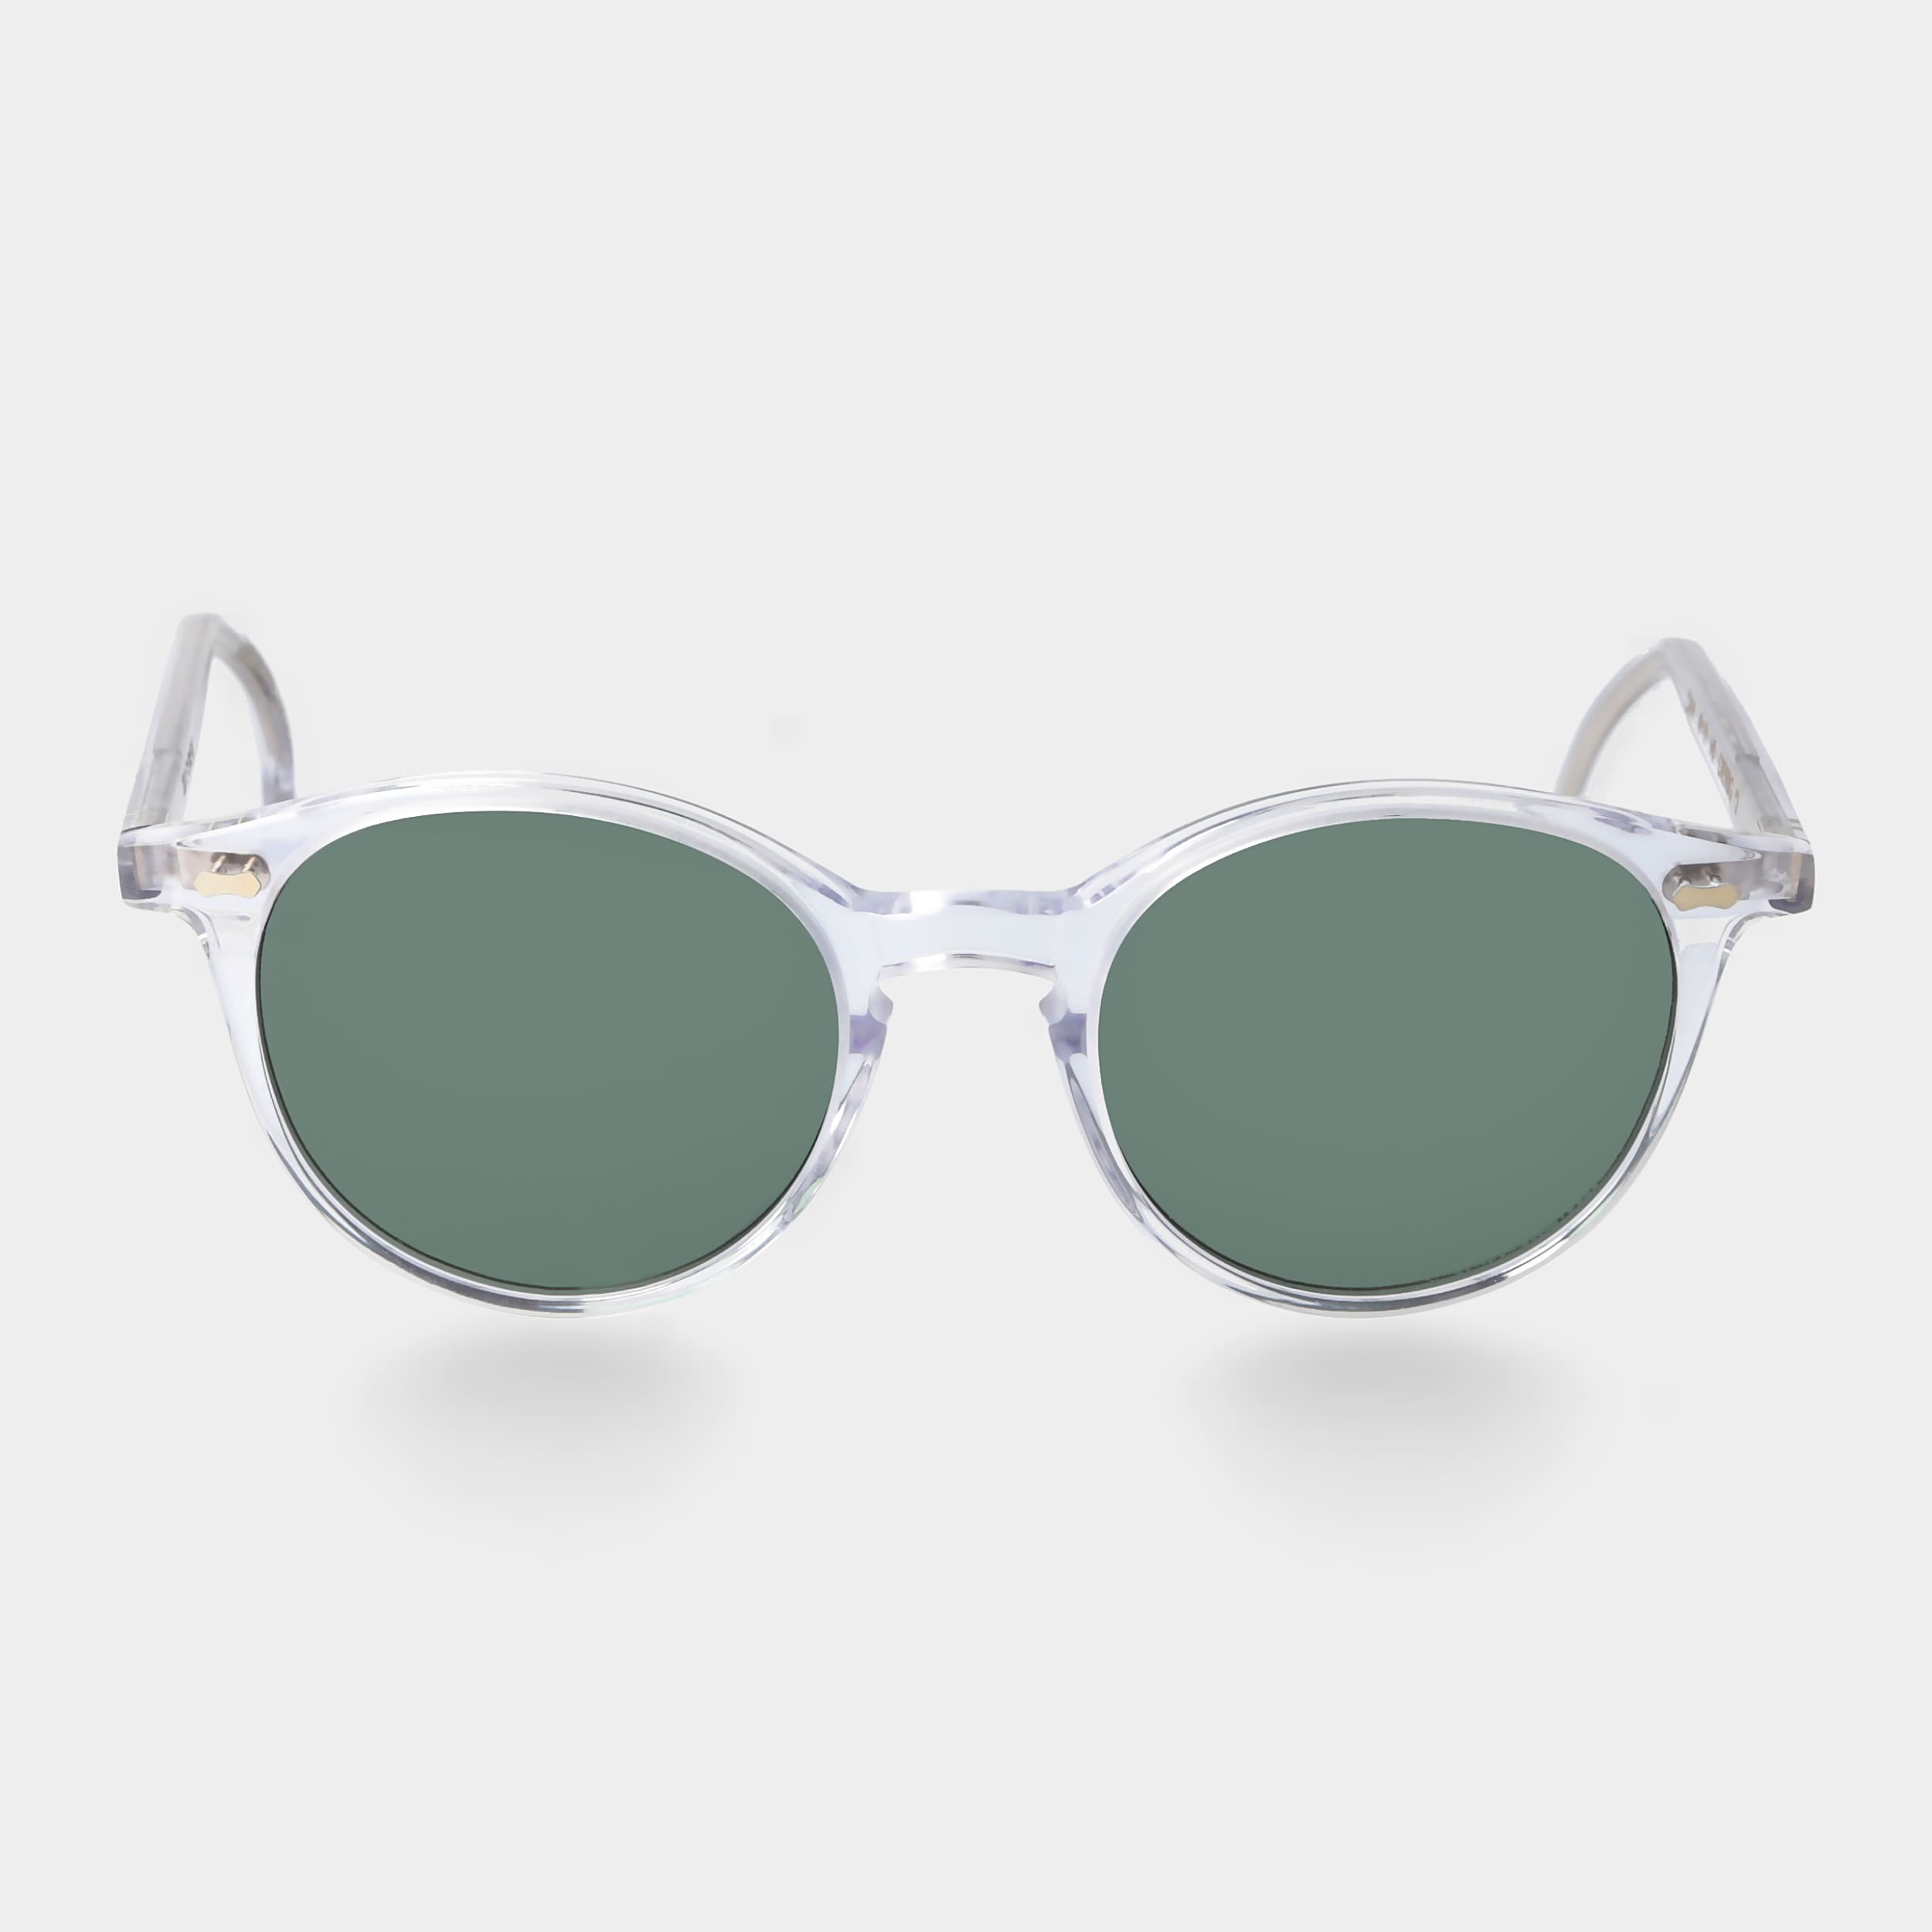 Sonnenbrille mit klarem Rahmen und polarisierten Gläsern | TBD Eyewear | Sonnenbrillen